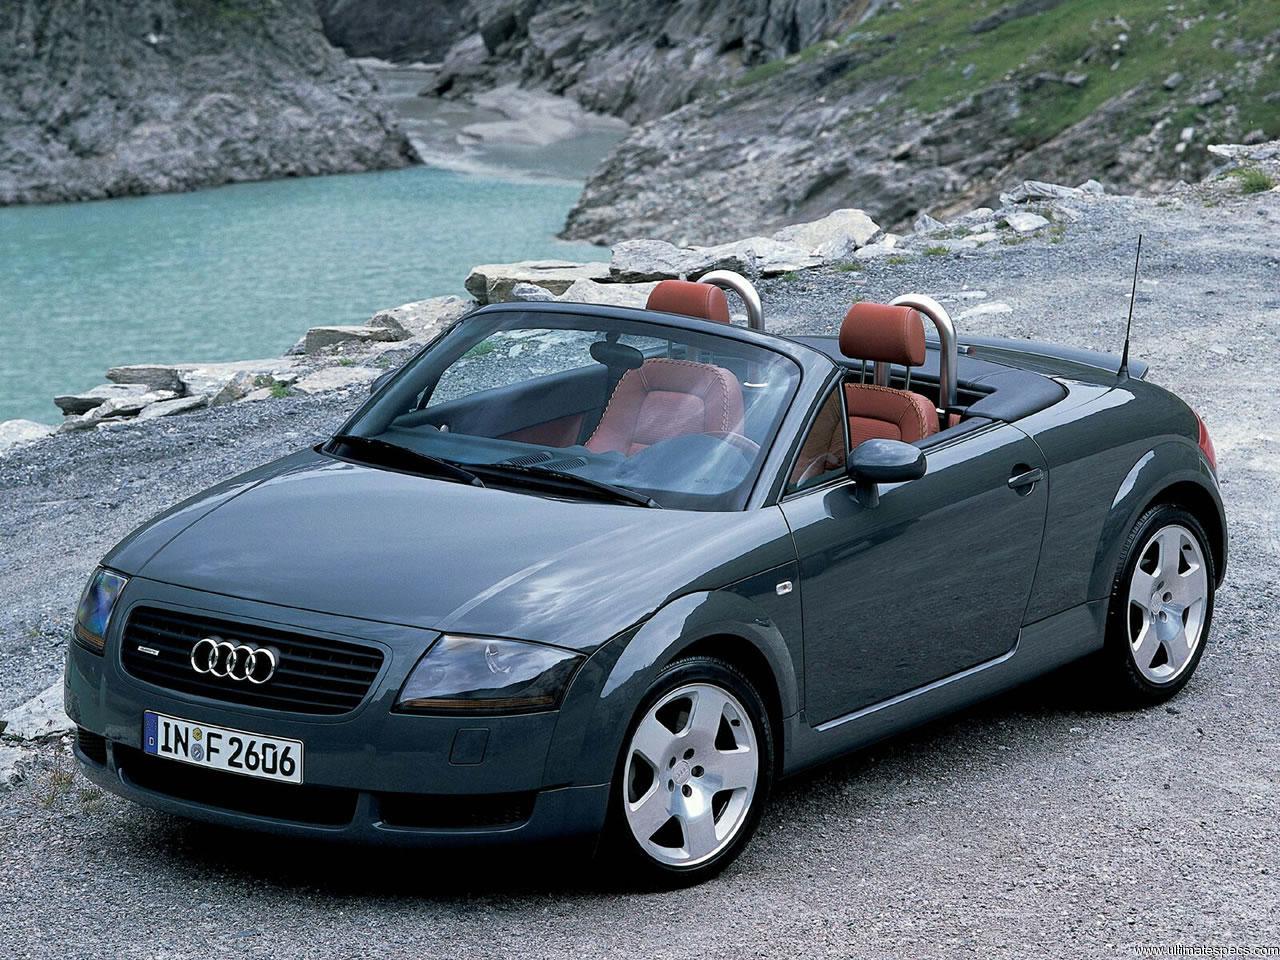 Audi TT (8N) Roadster image